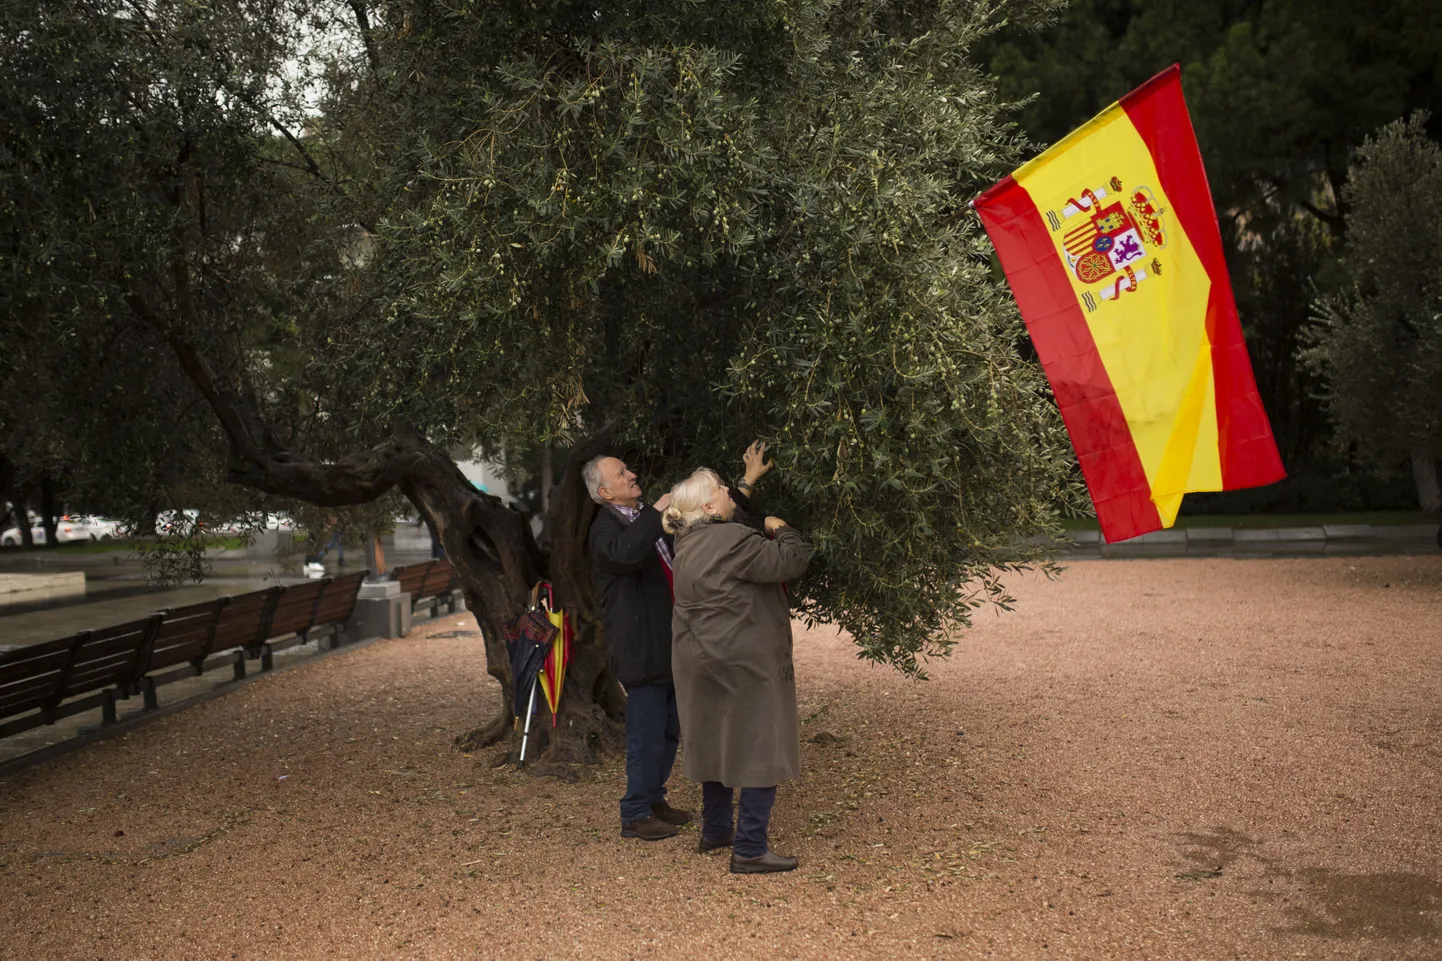 Hispaania ühtsuse toetuseks on üle selle maa, sealhulgas ka Kataloonias, välja ilmunud järjest rohkem riigilippe. Pildil kinnitatakse Hispaania lippu oliivipuu külge Madridi Kolumbuse väljakul.